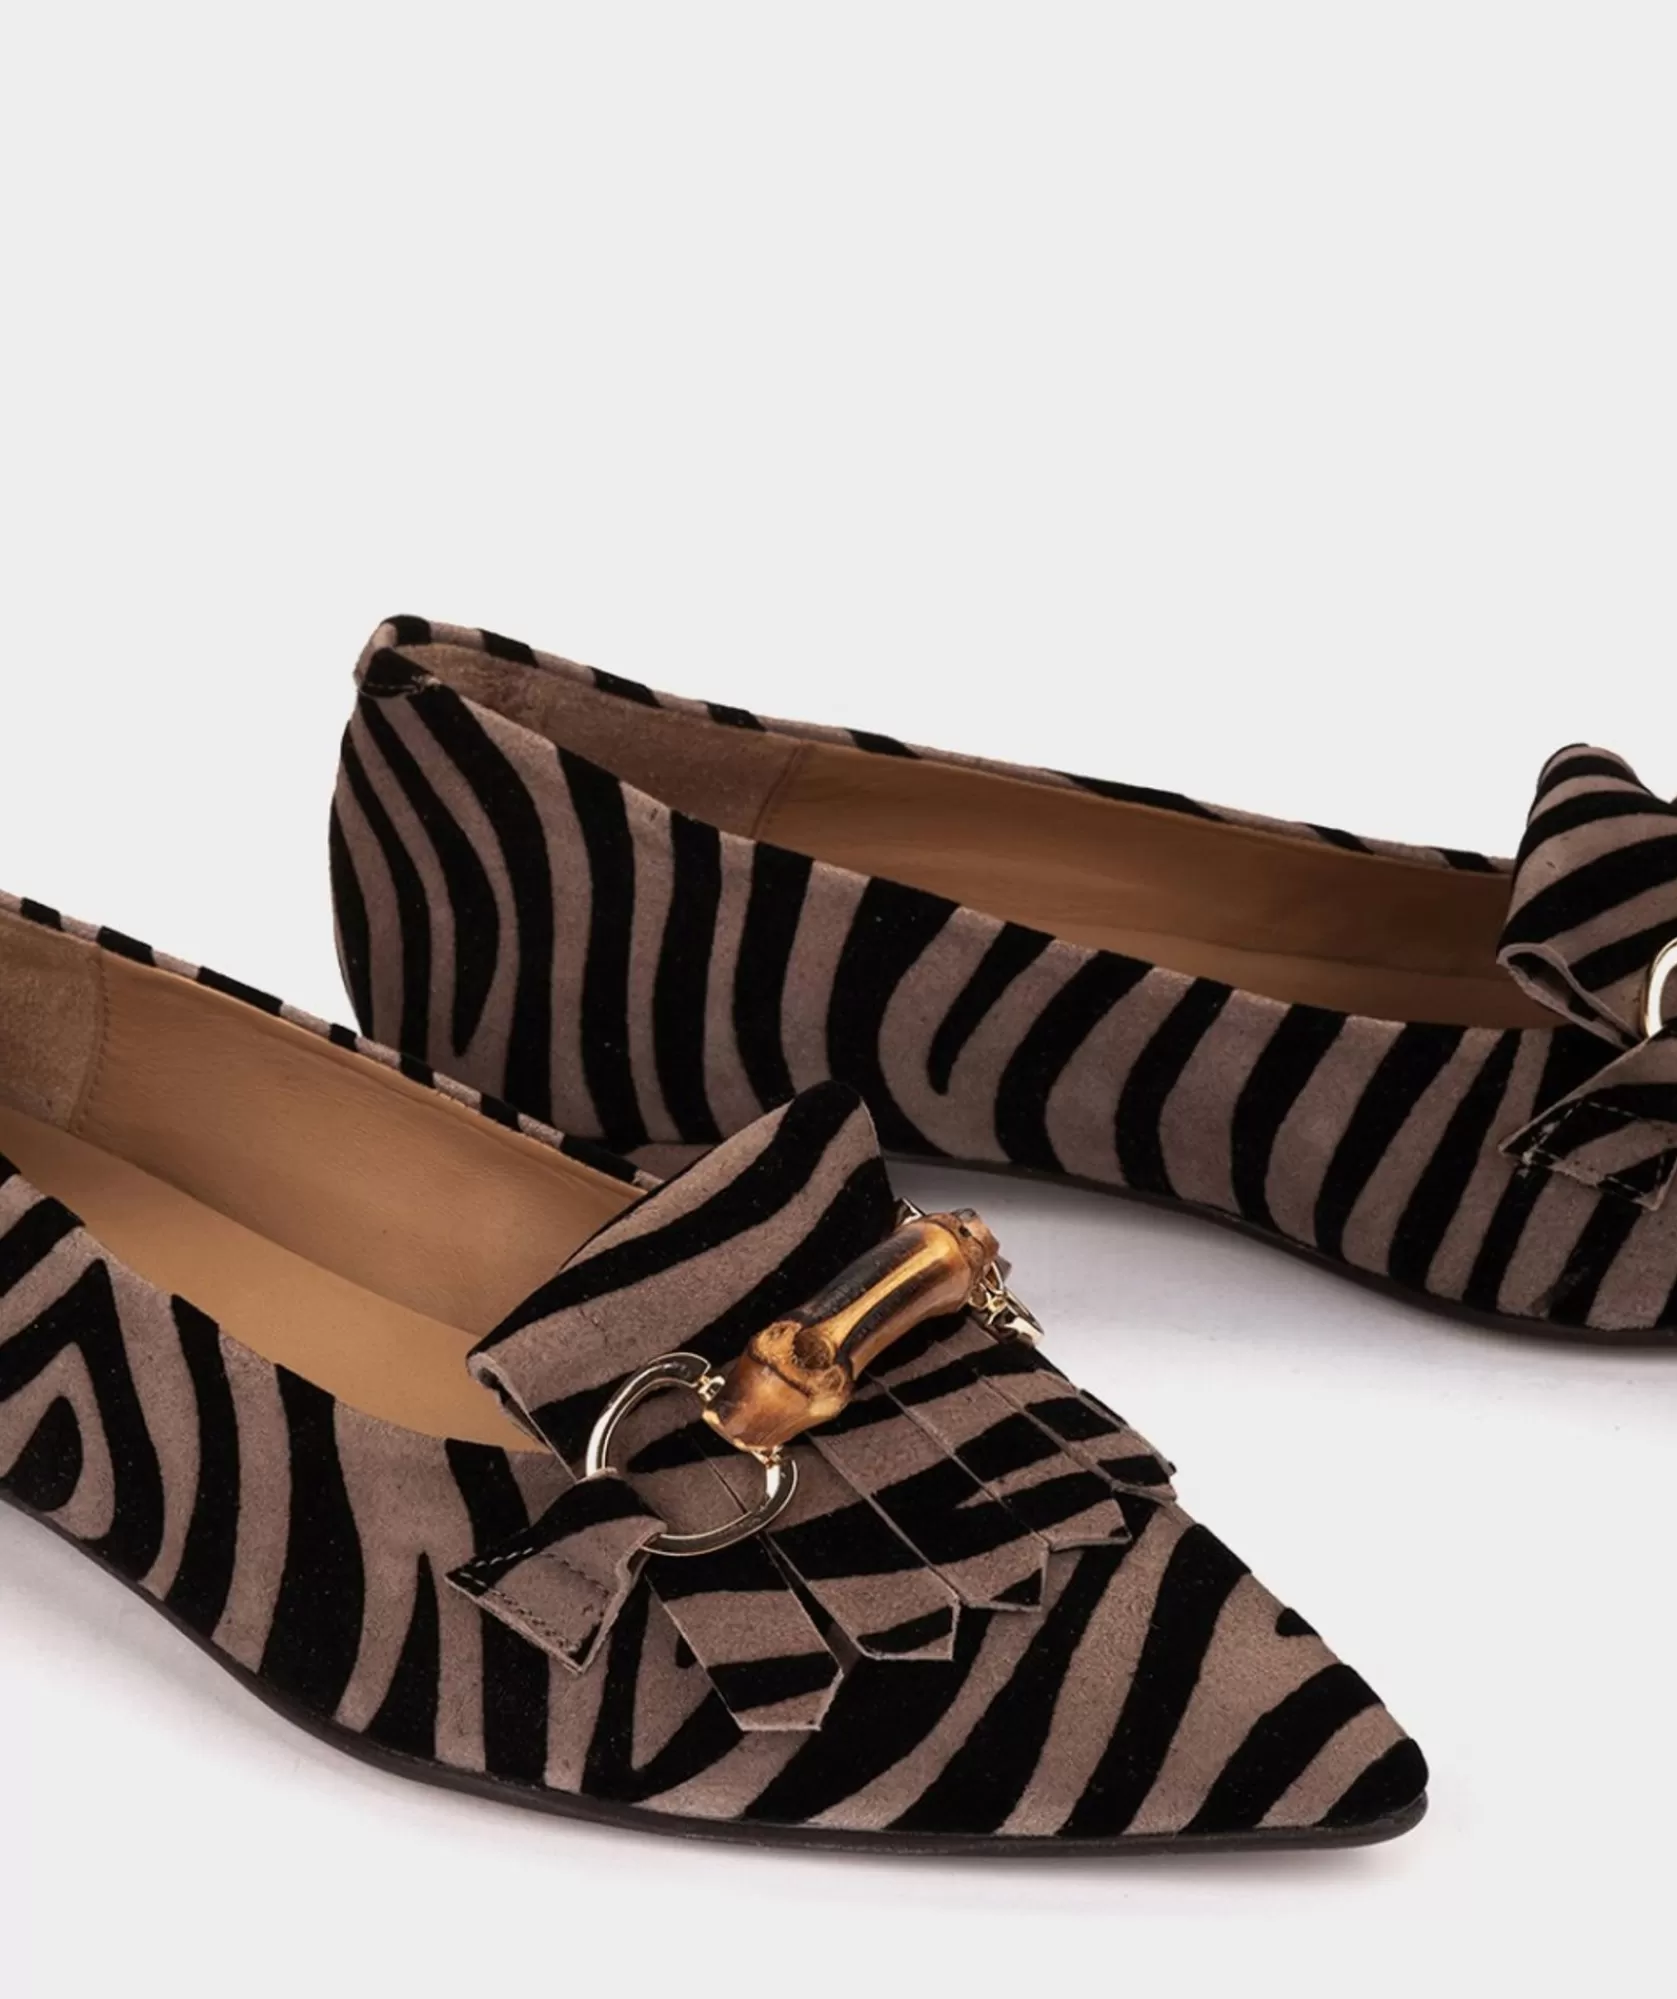 Calzado Pedro Miralles Bailarinas Fabricadas En Piel Con Estampado Animal Print Zebra Acero